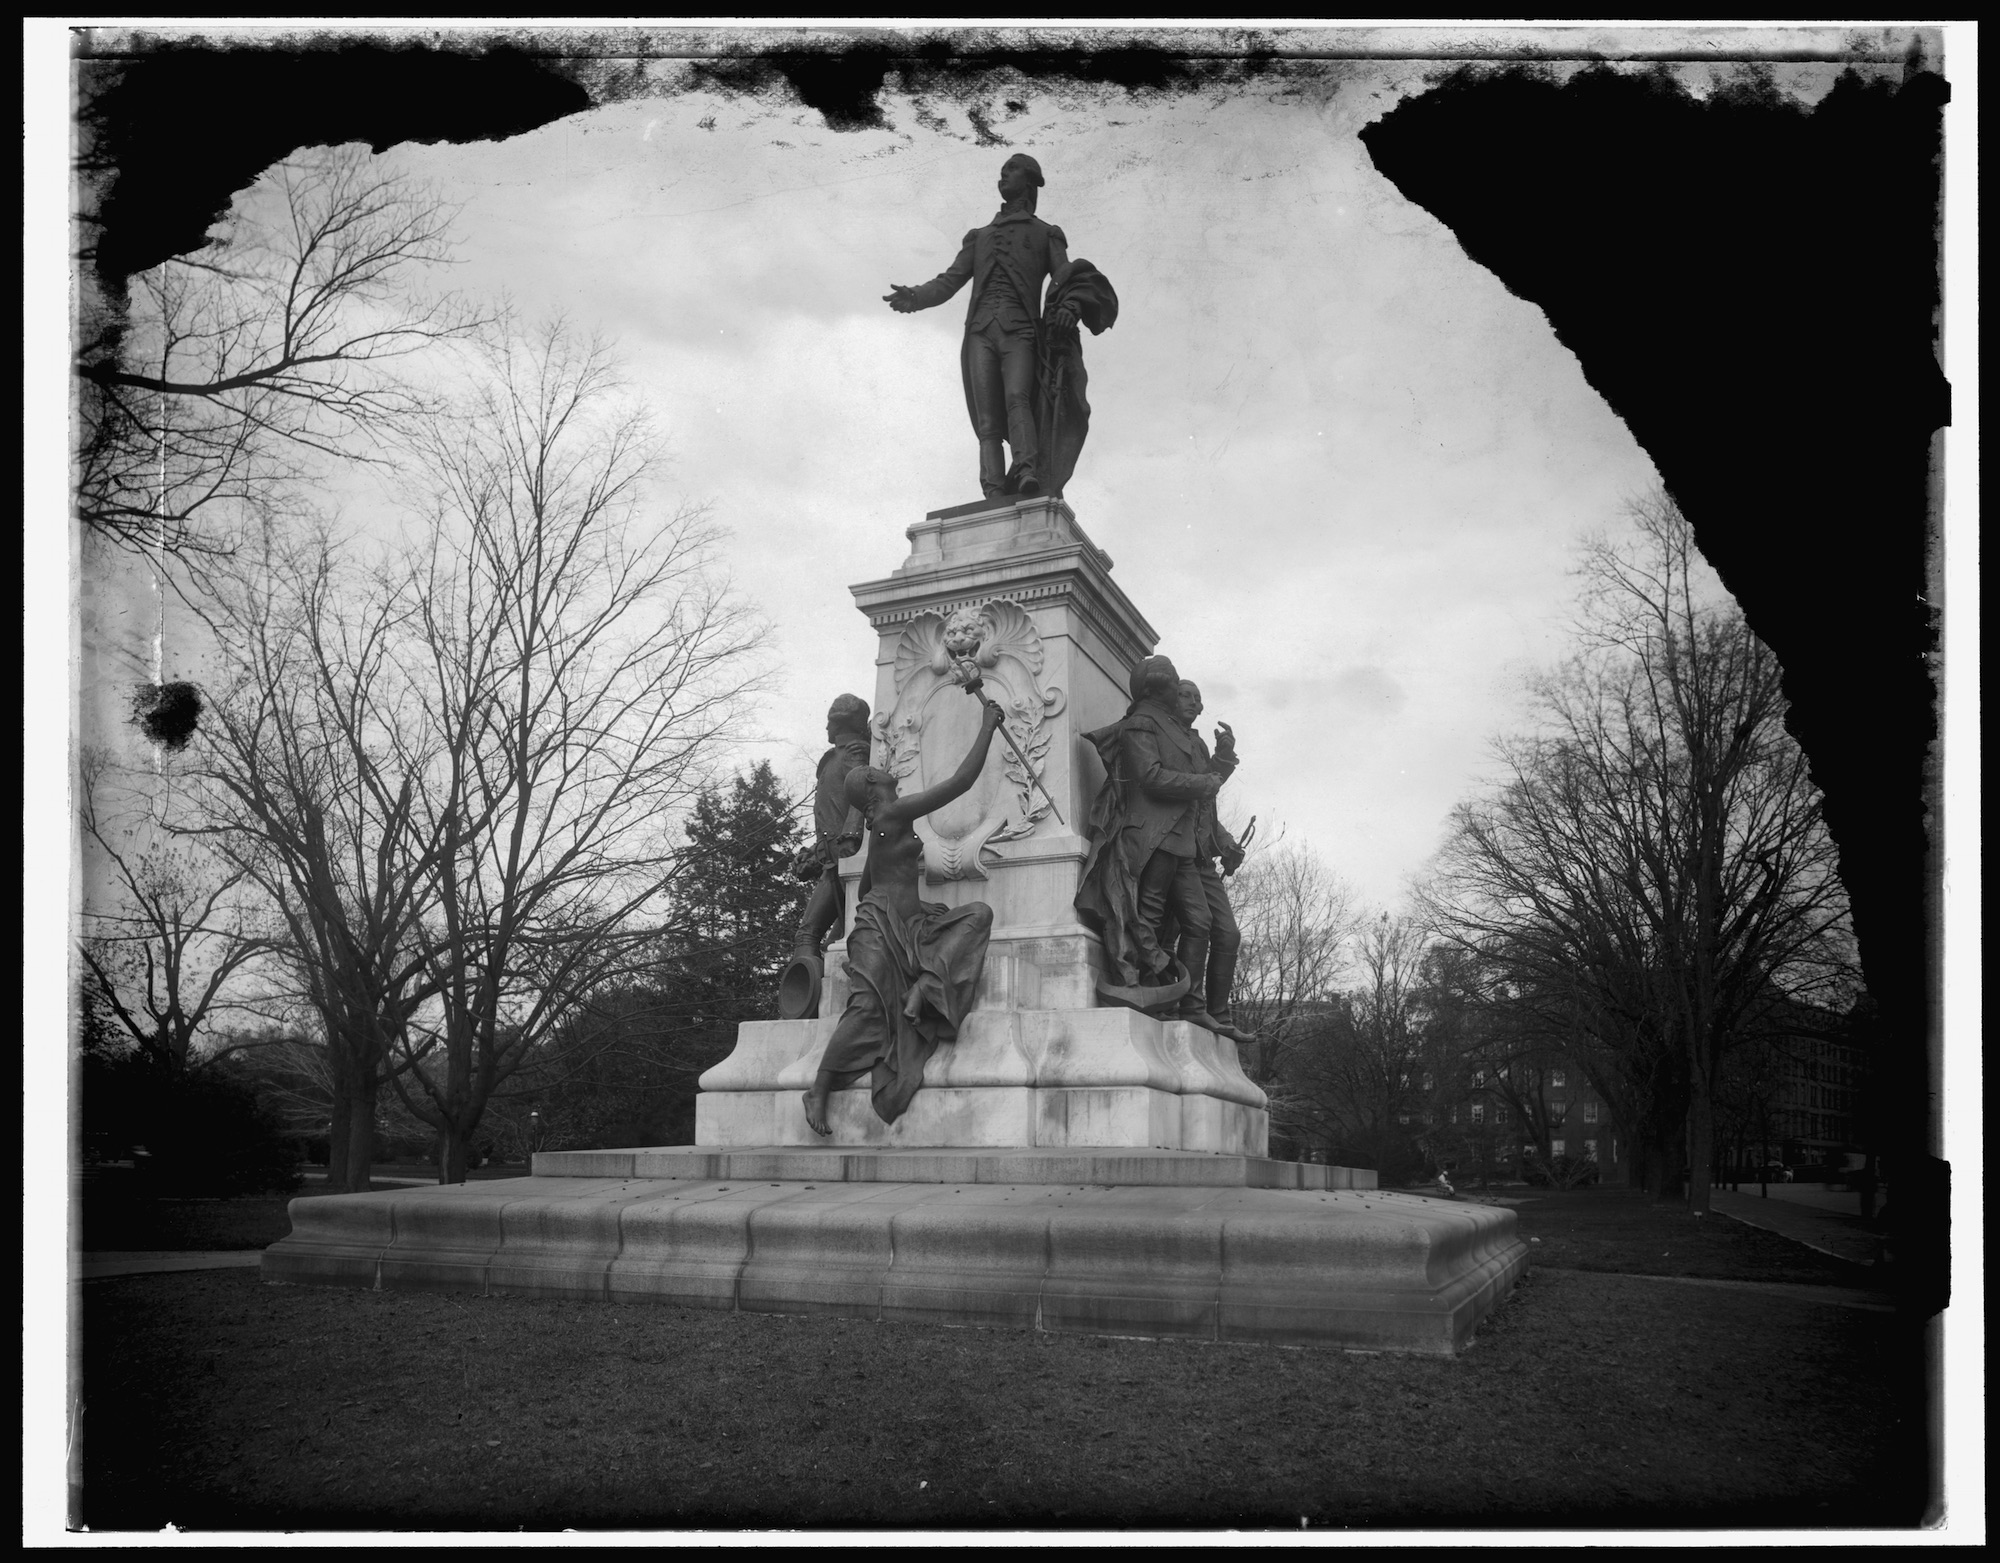 Lafayette Square statue